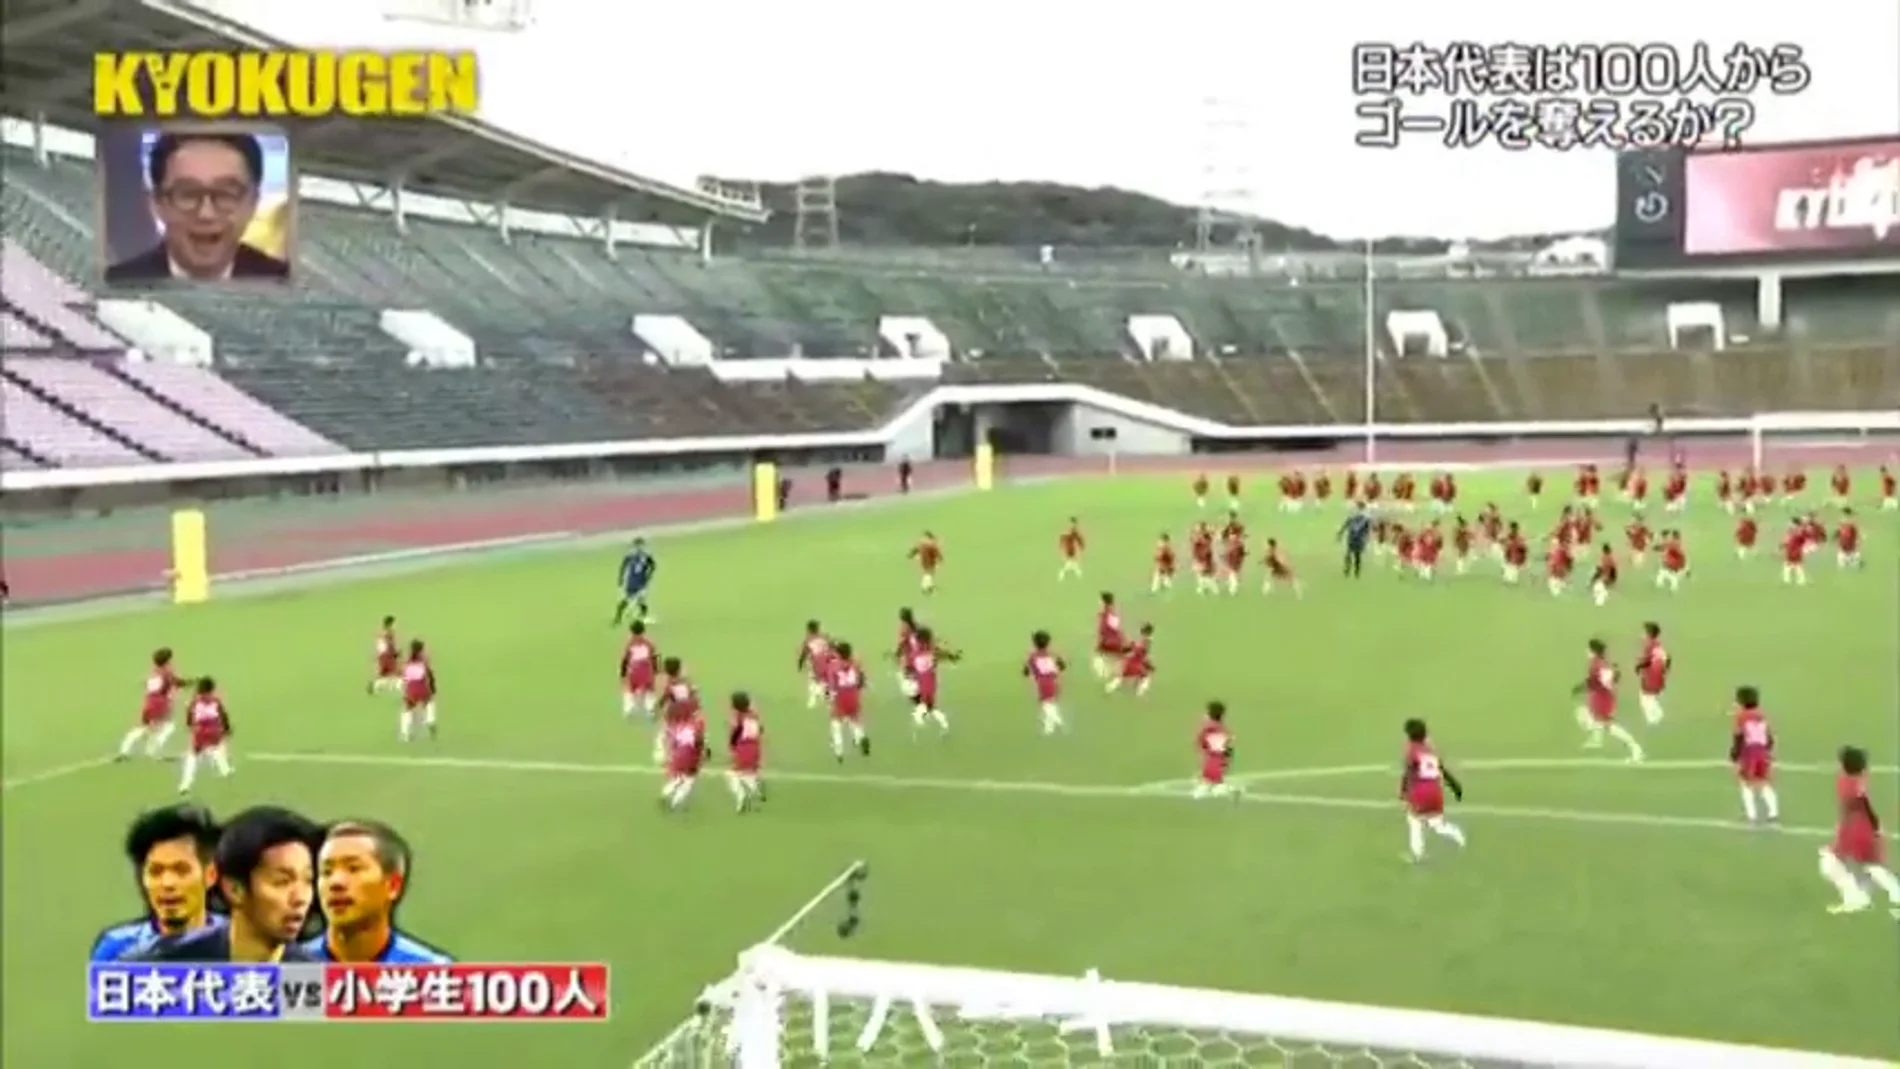 ¿Serán capaces de marcarles un gol? Tres jugadores de la selección japonesa se enfrentan a 100 niños